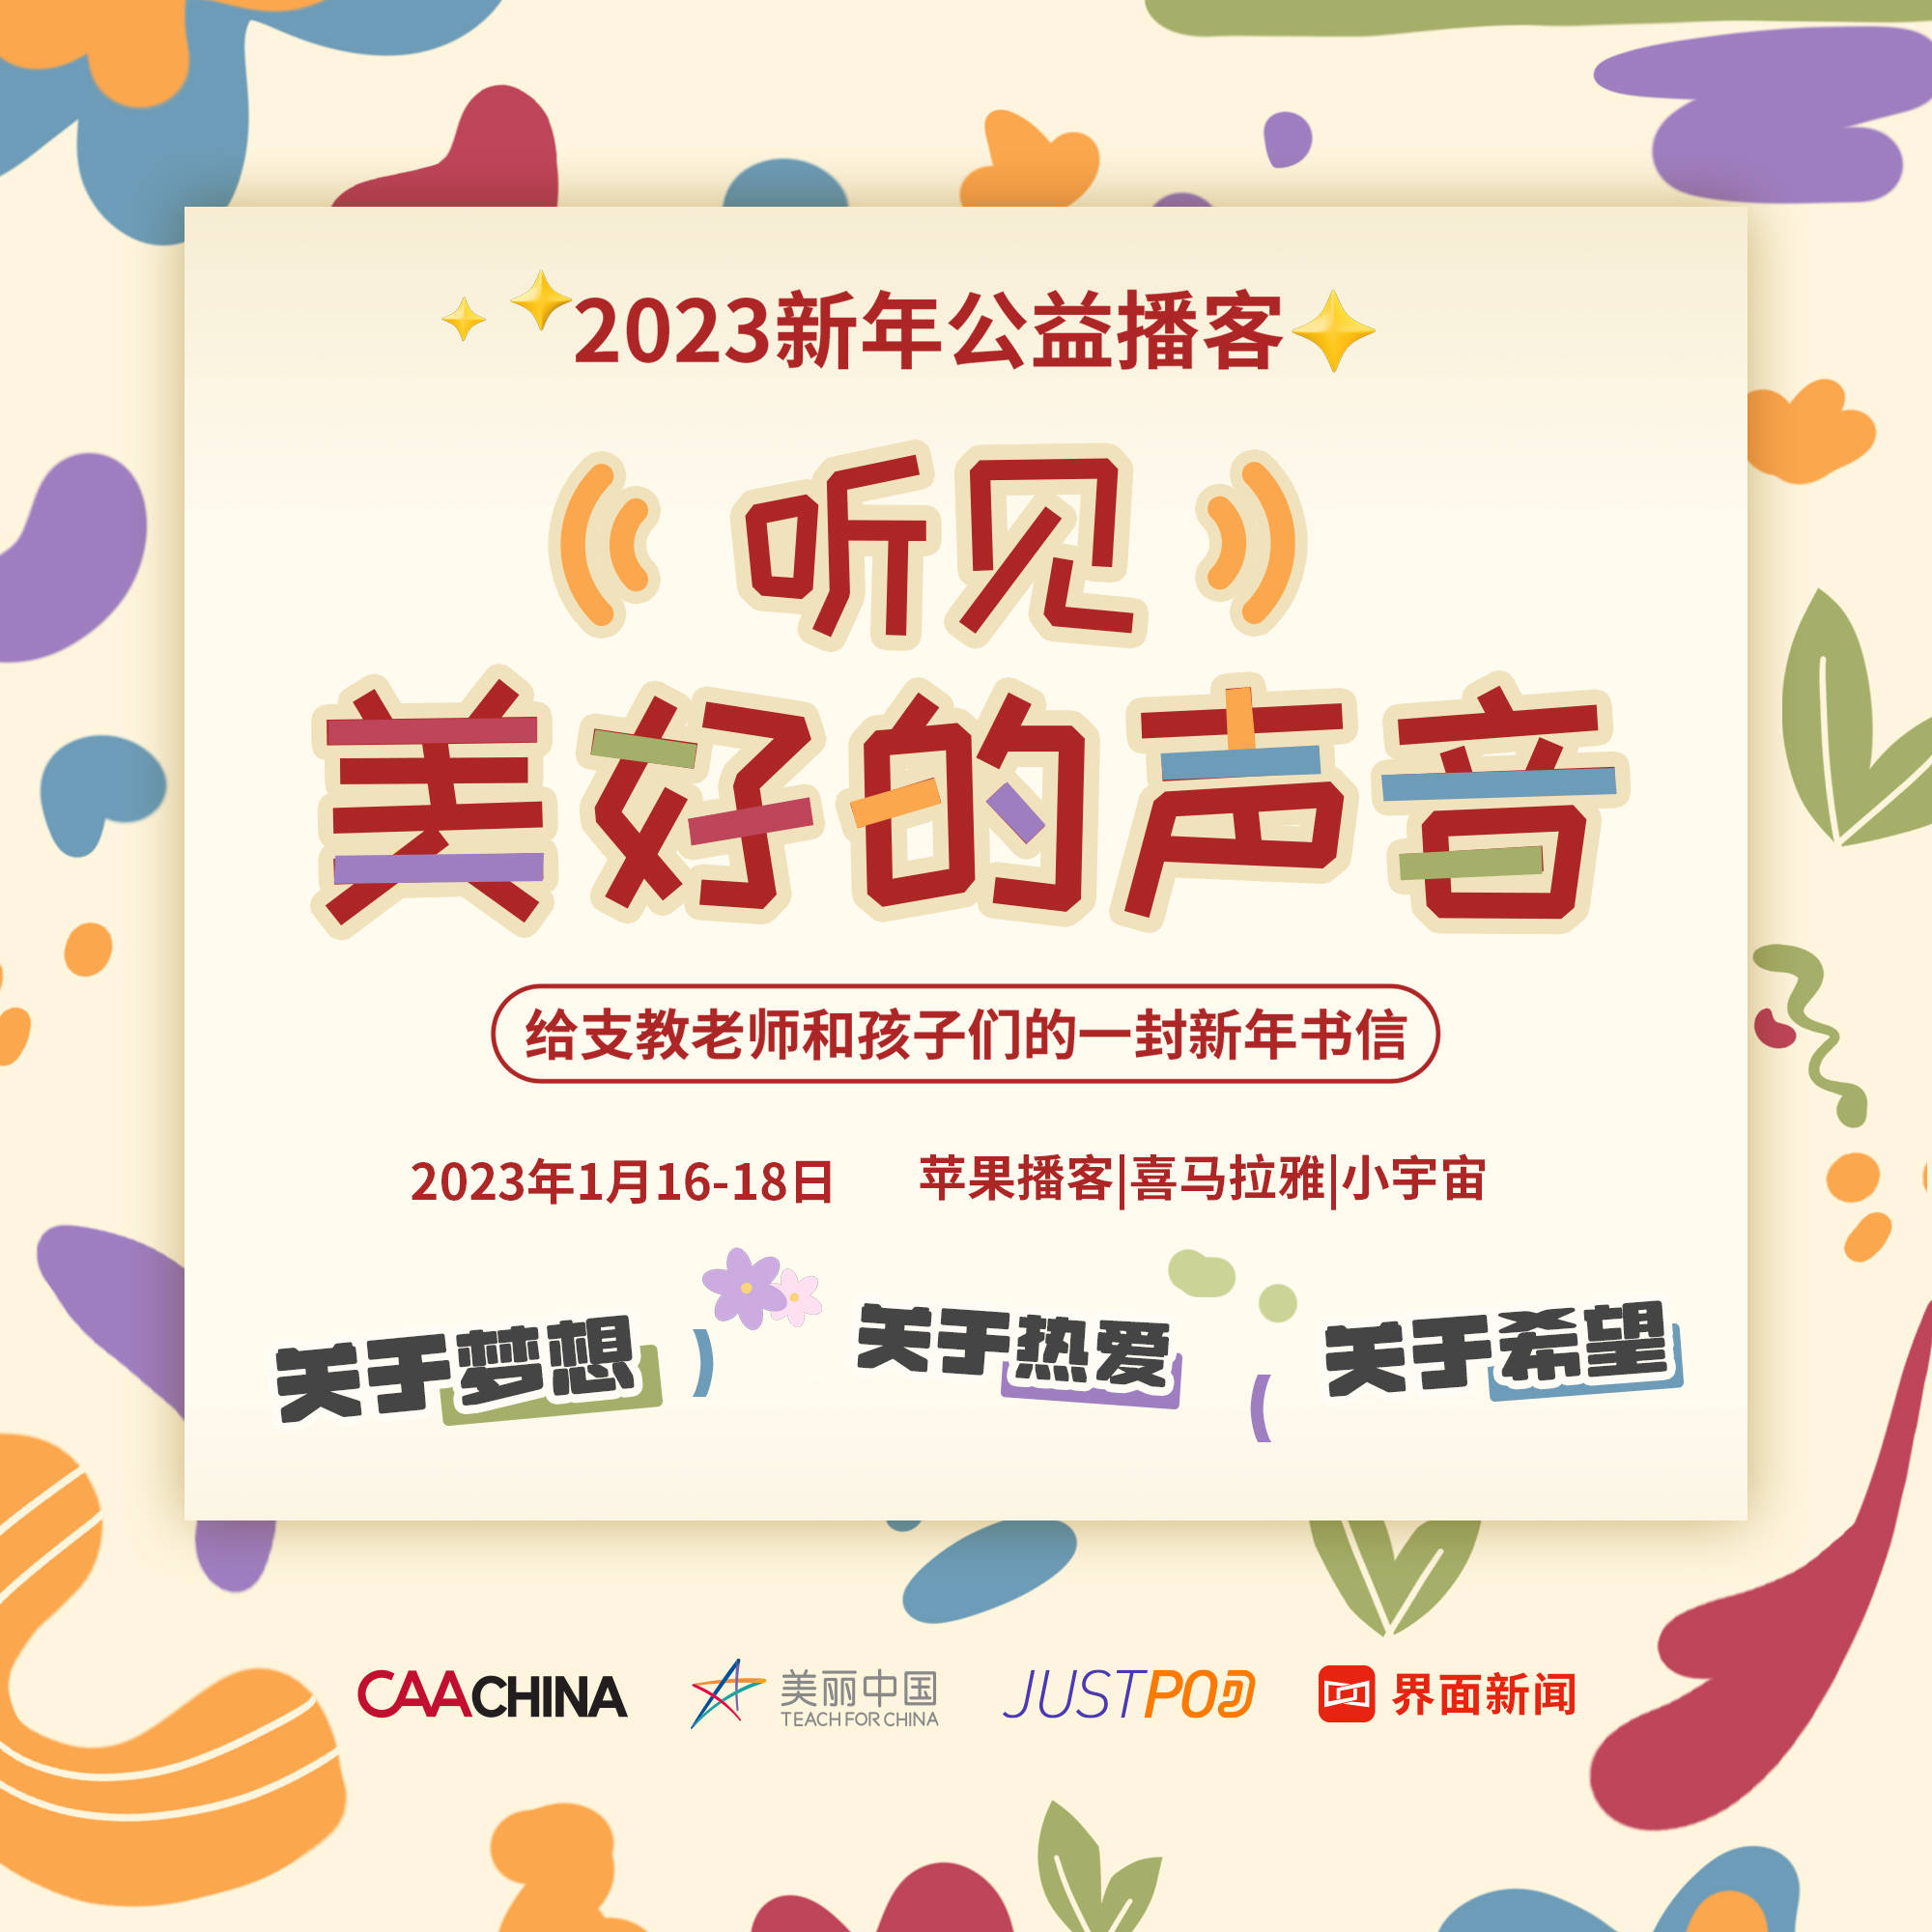 中国是式人生破解版苹果:CAA中国携手美丽中国及JustPod推出首个新年公益播客节目「听见美好的声音」